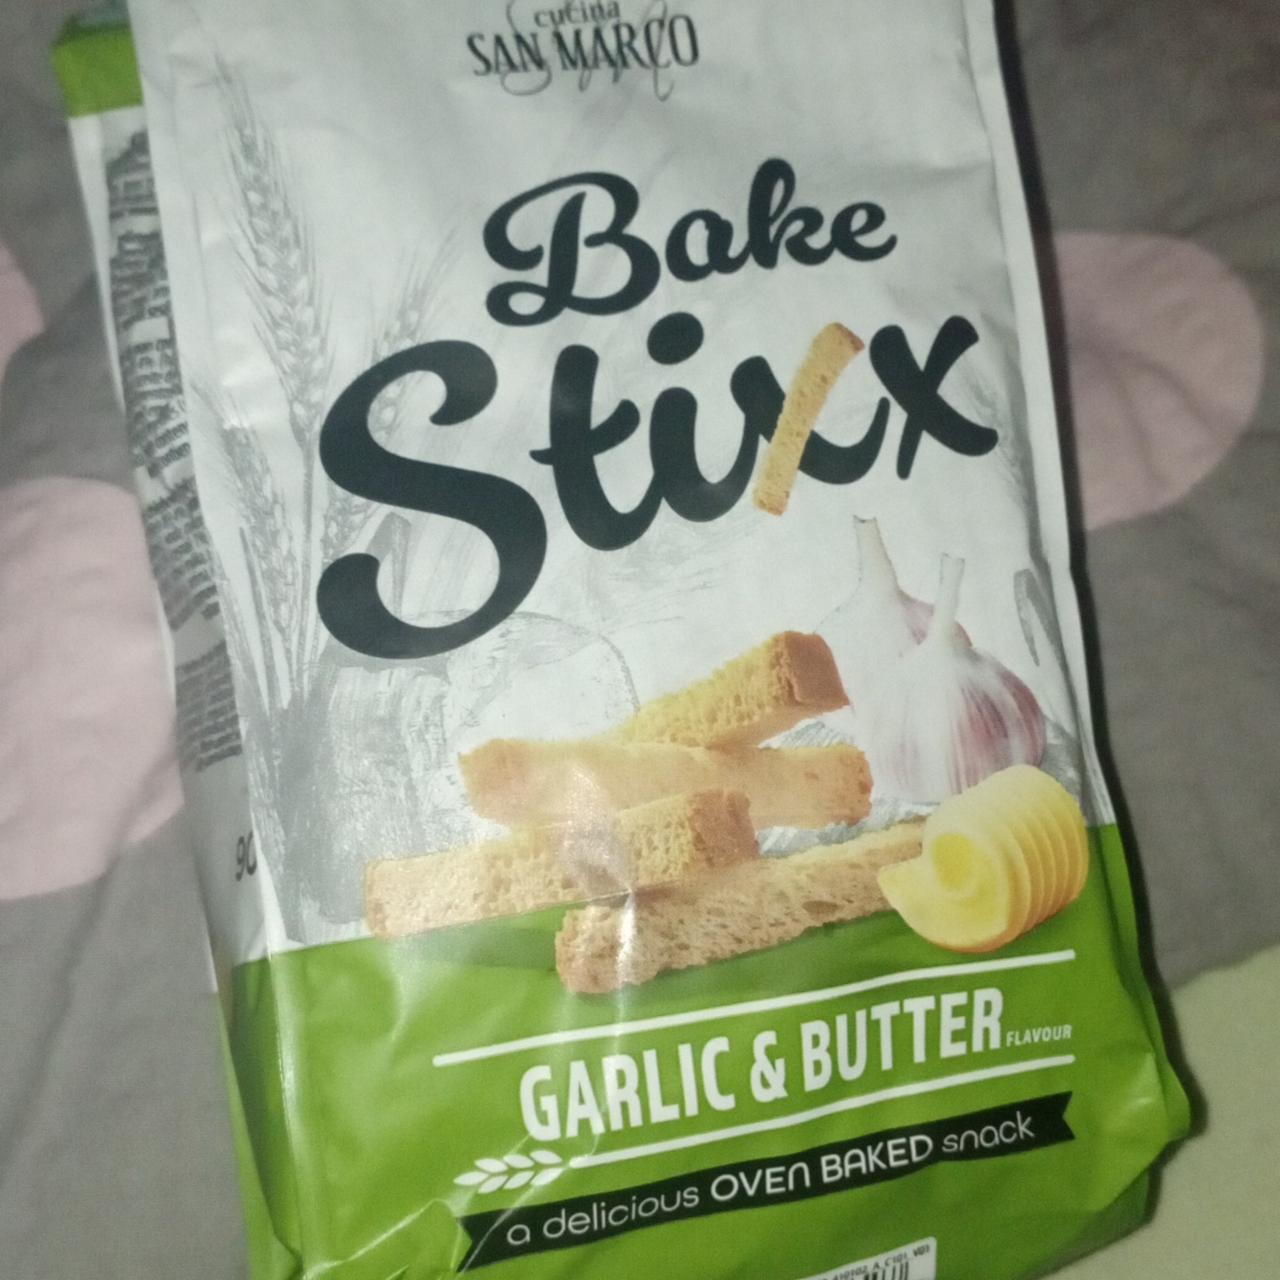 Zdjęcia - Paluszki chlebowe Czosnek i Masło BAKE Stixx